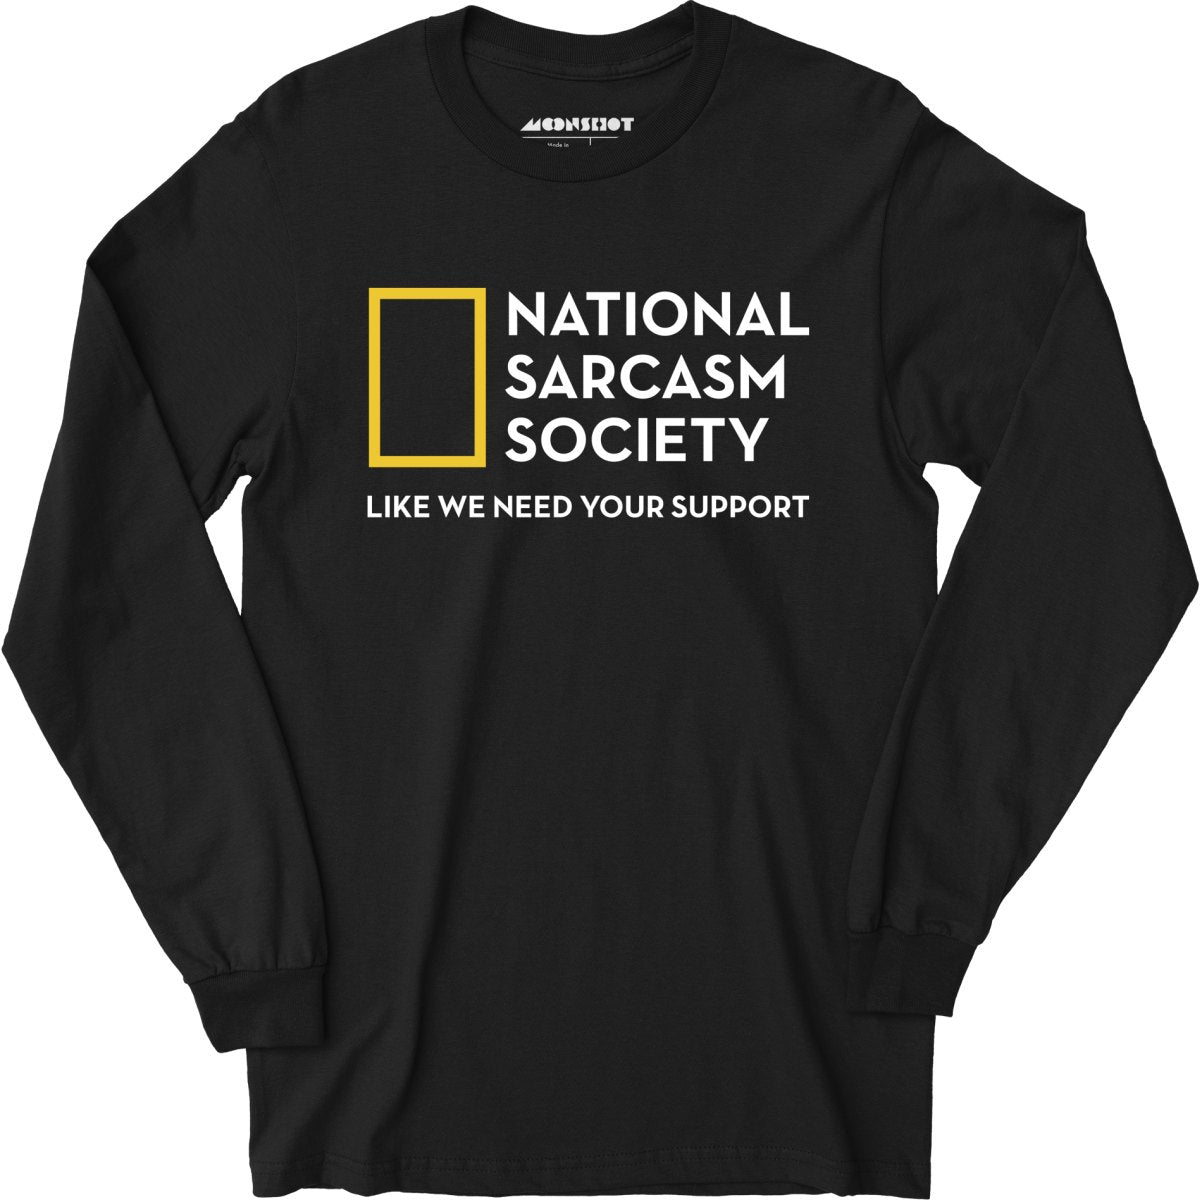 National Sarcasm Society - Long Sleeve T-Shirt